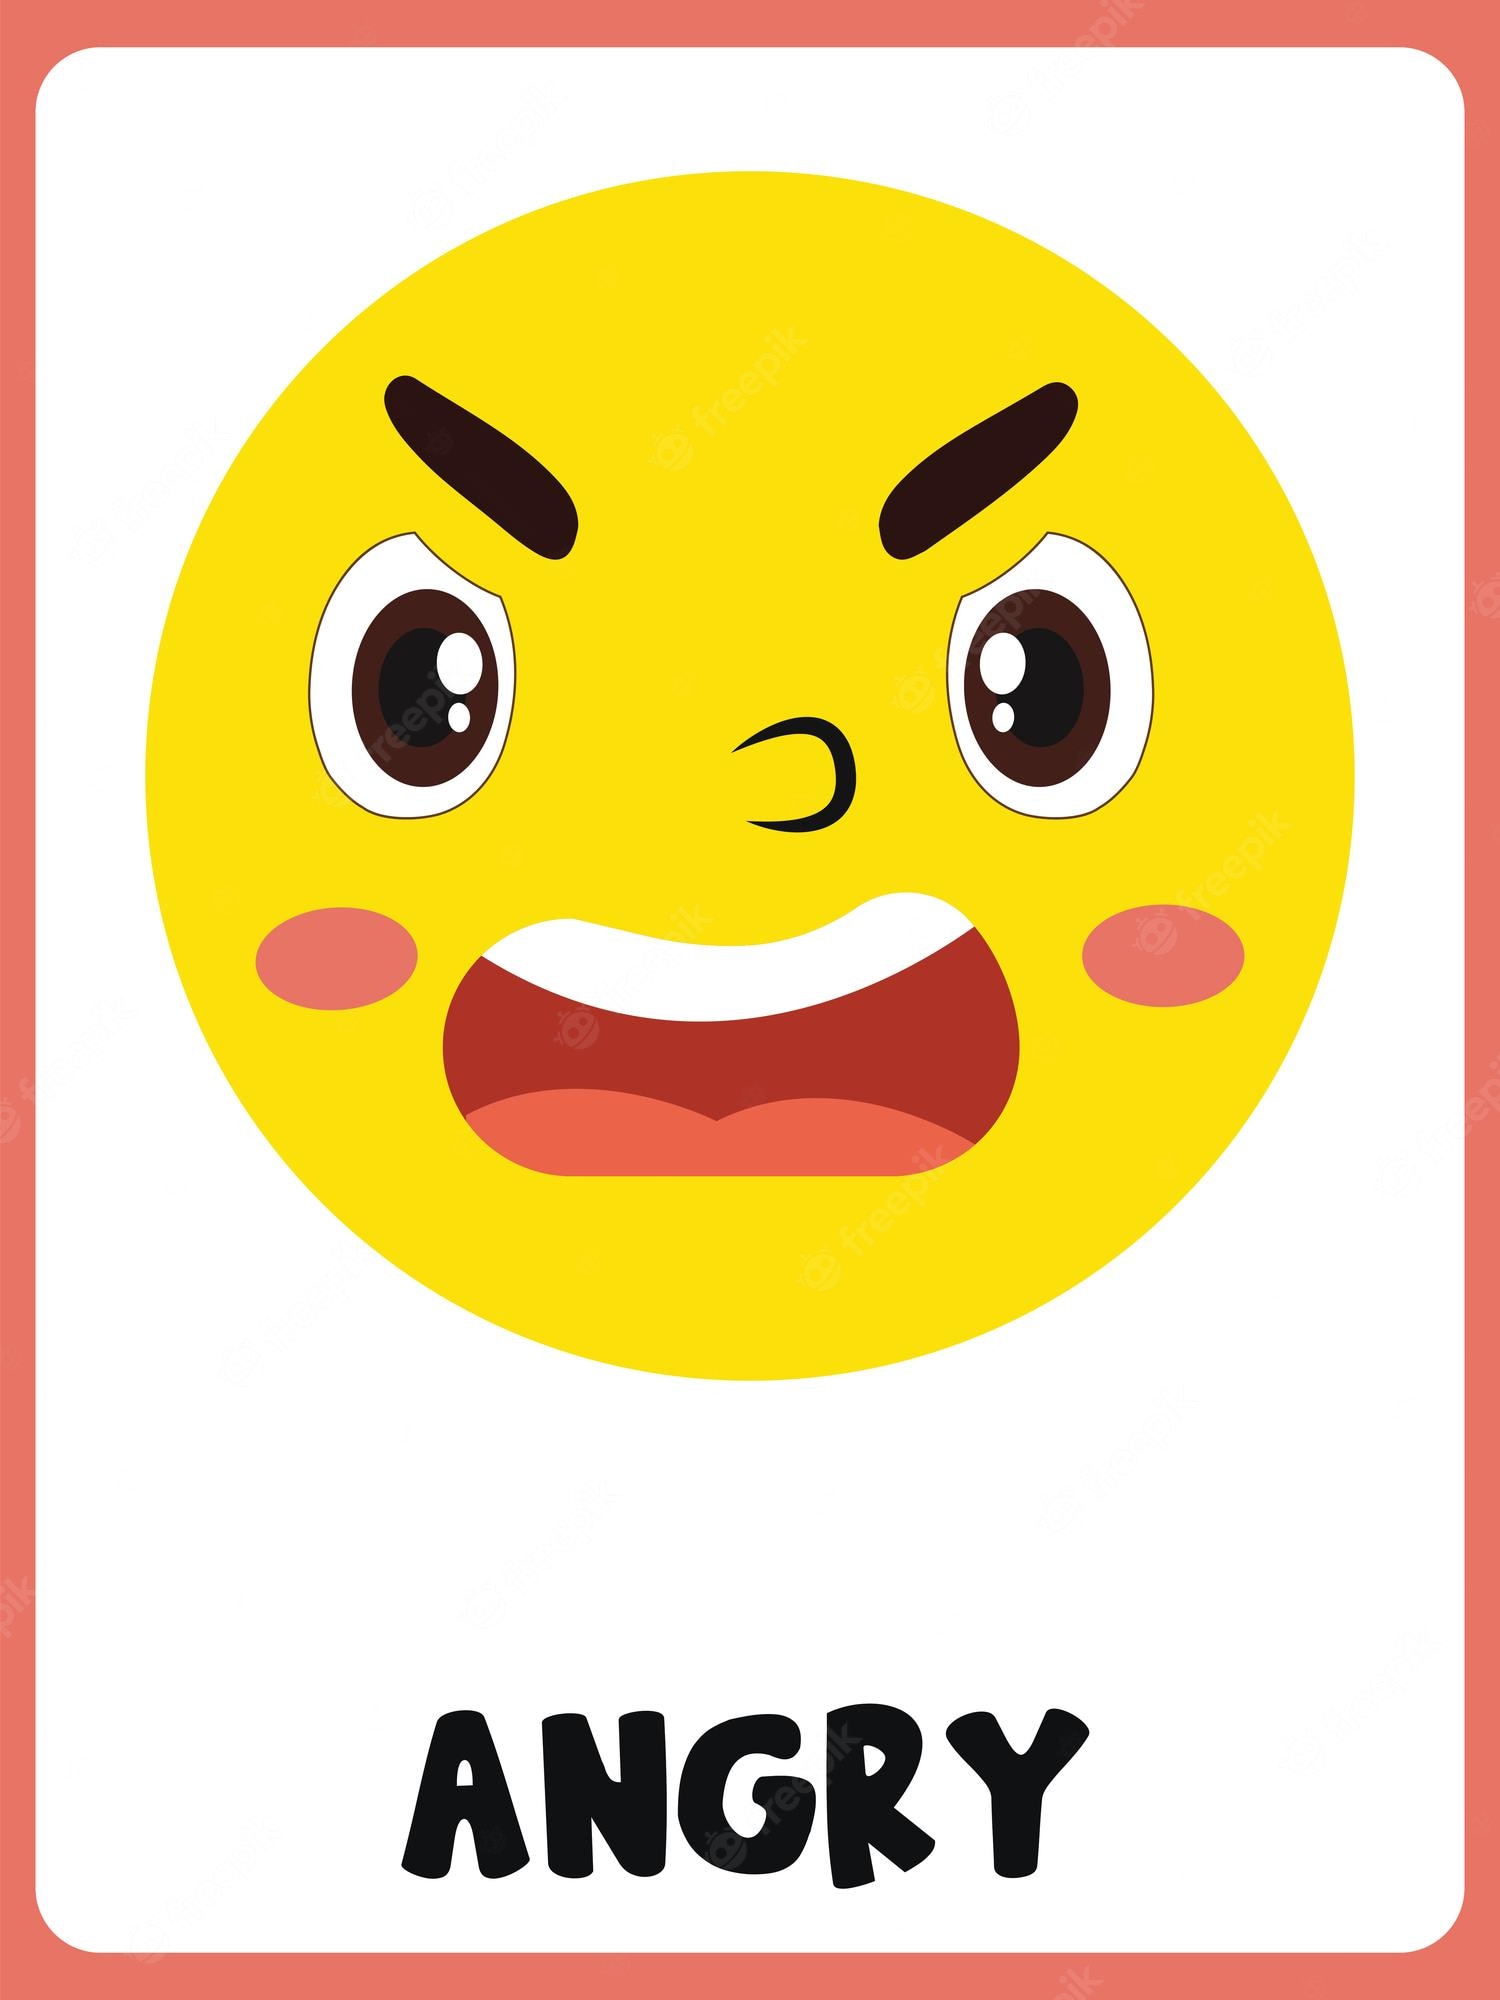 grumpy faces - Clip Art Library